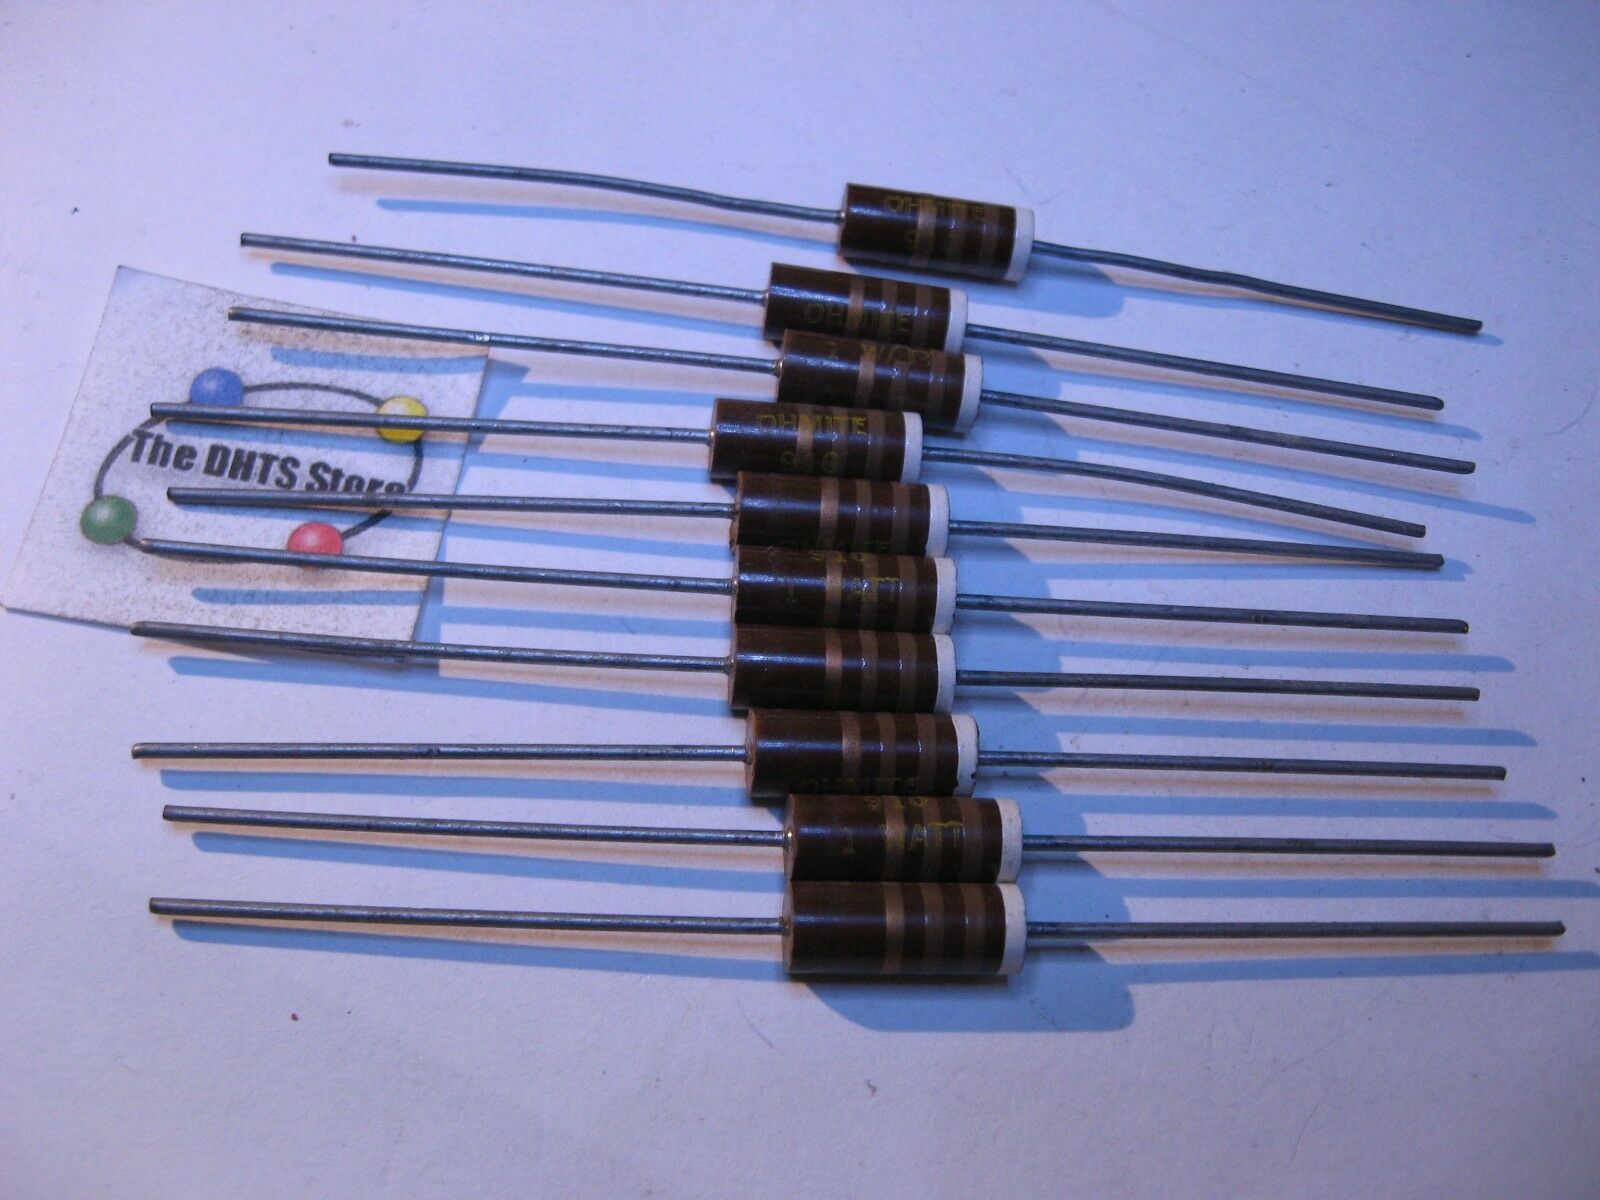 5 Pack Carbon Comp 3.6 MEG OHM 1/2 Watt 5% Resistors NOS 1 